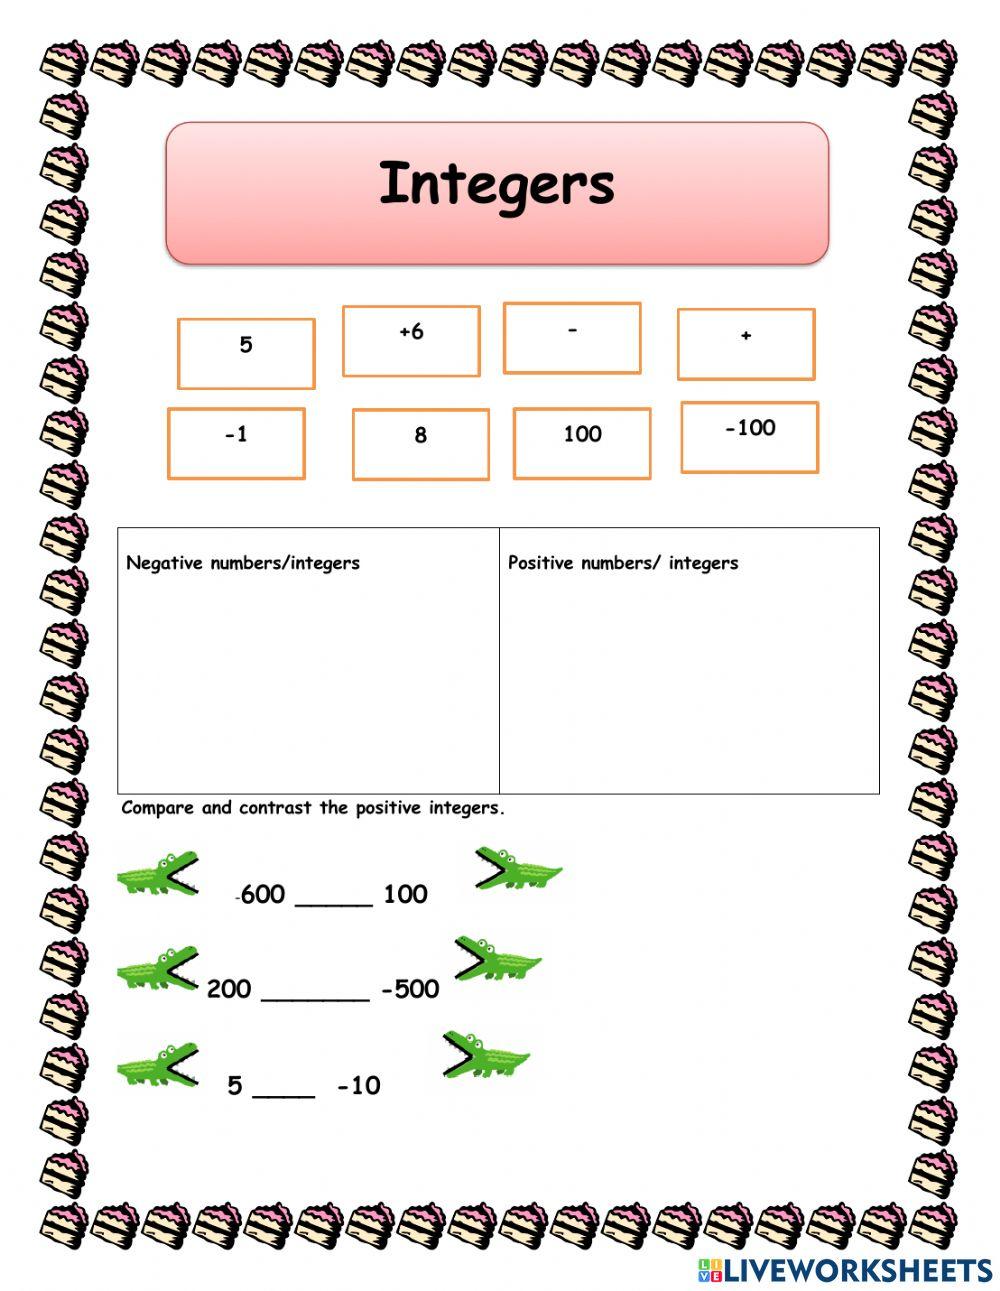 Comparing integers